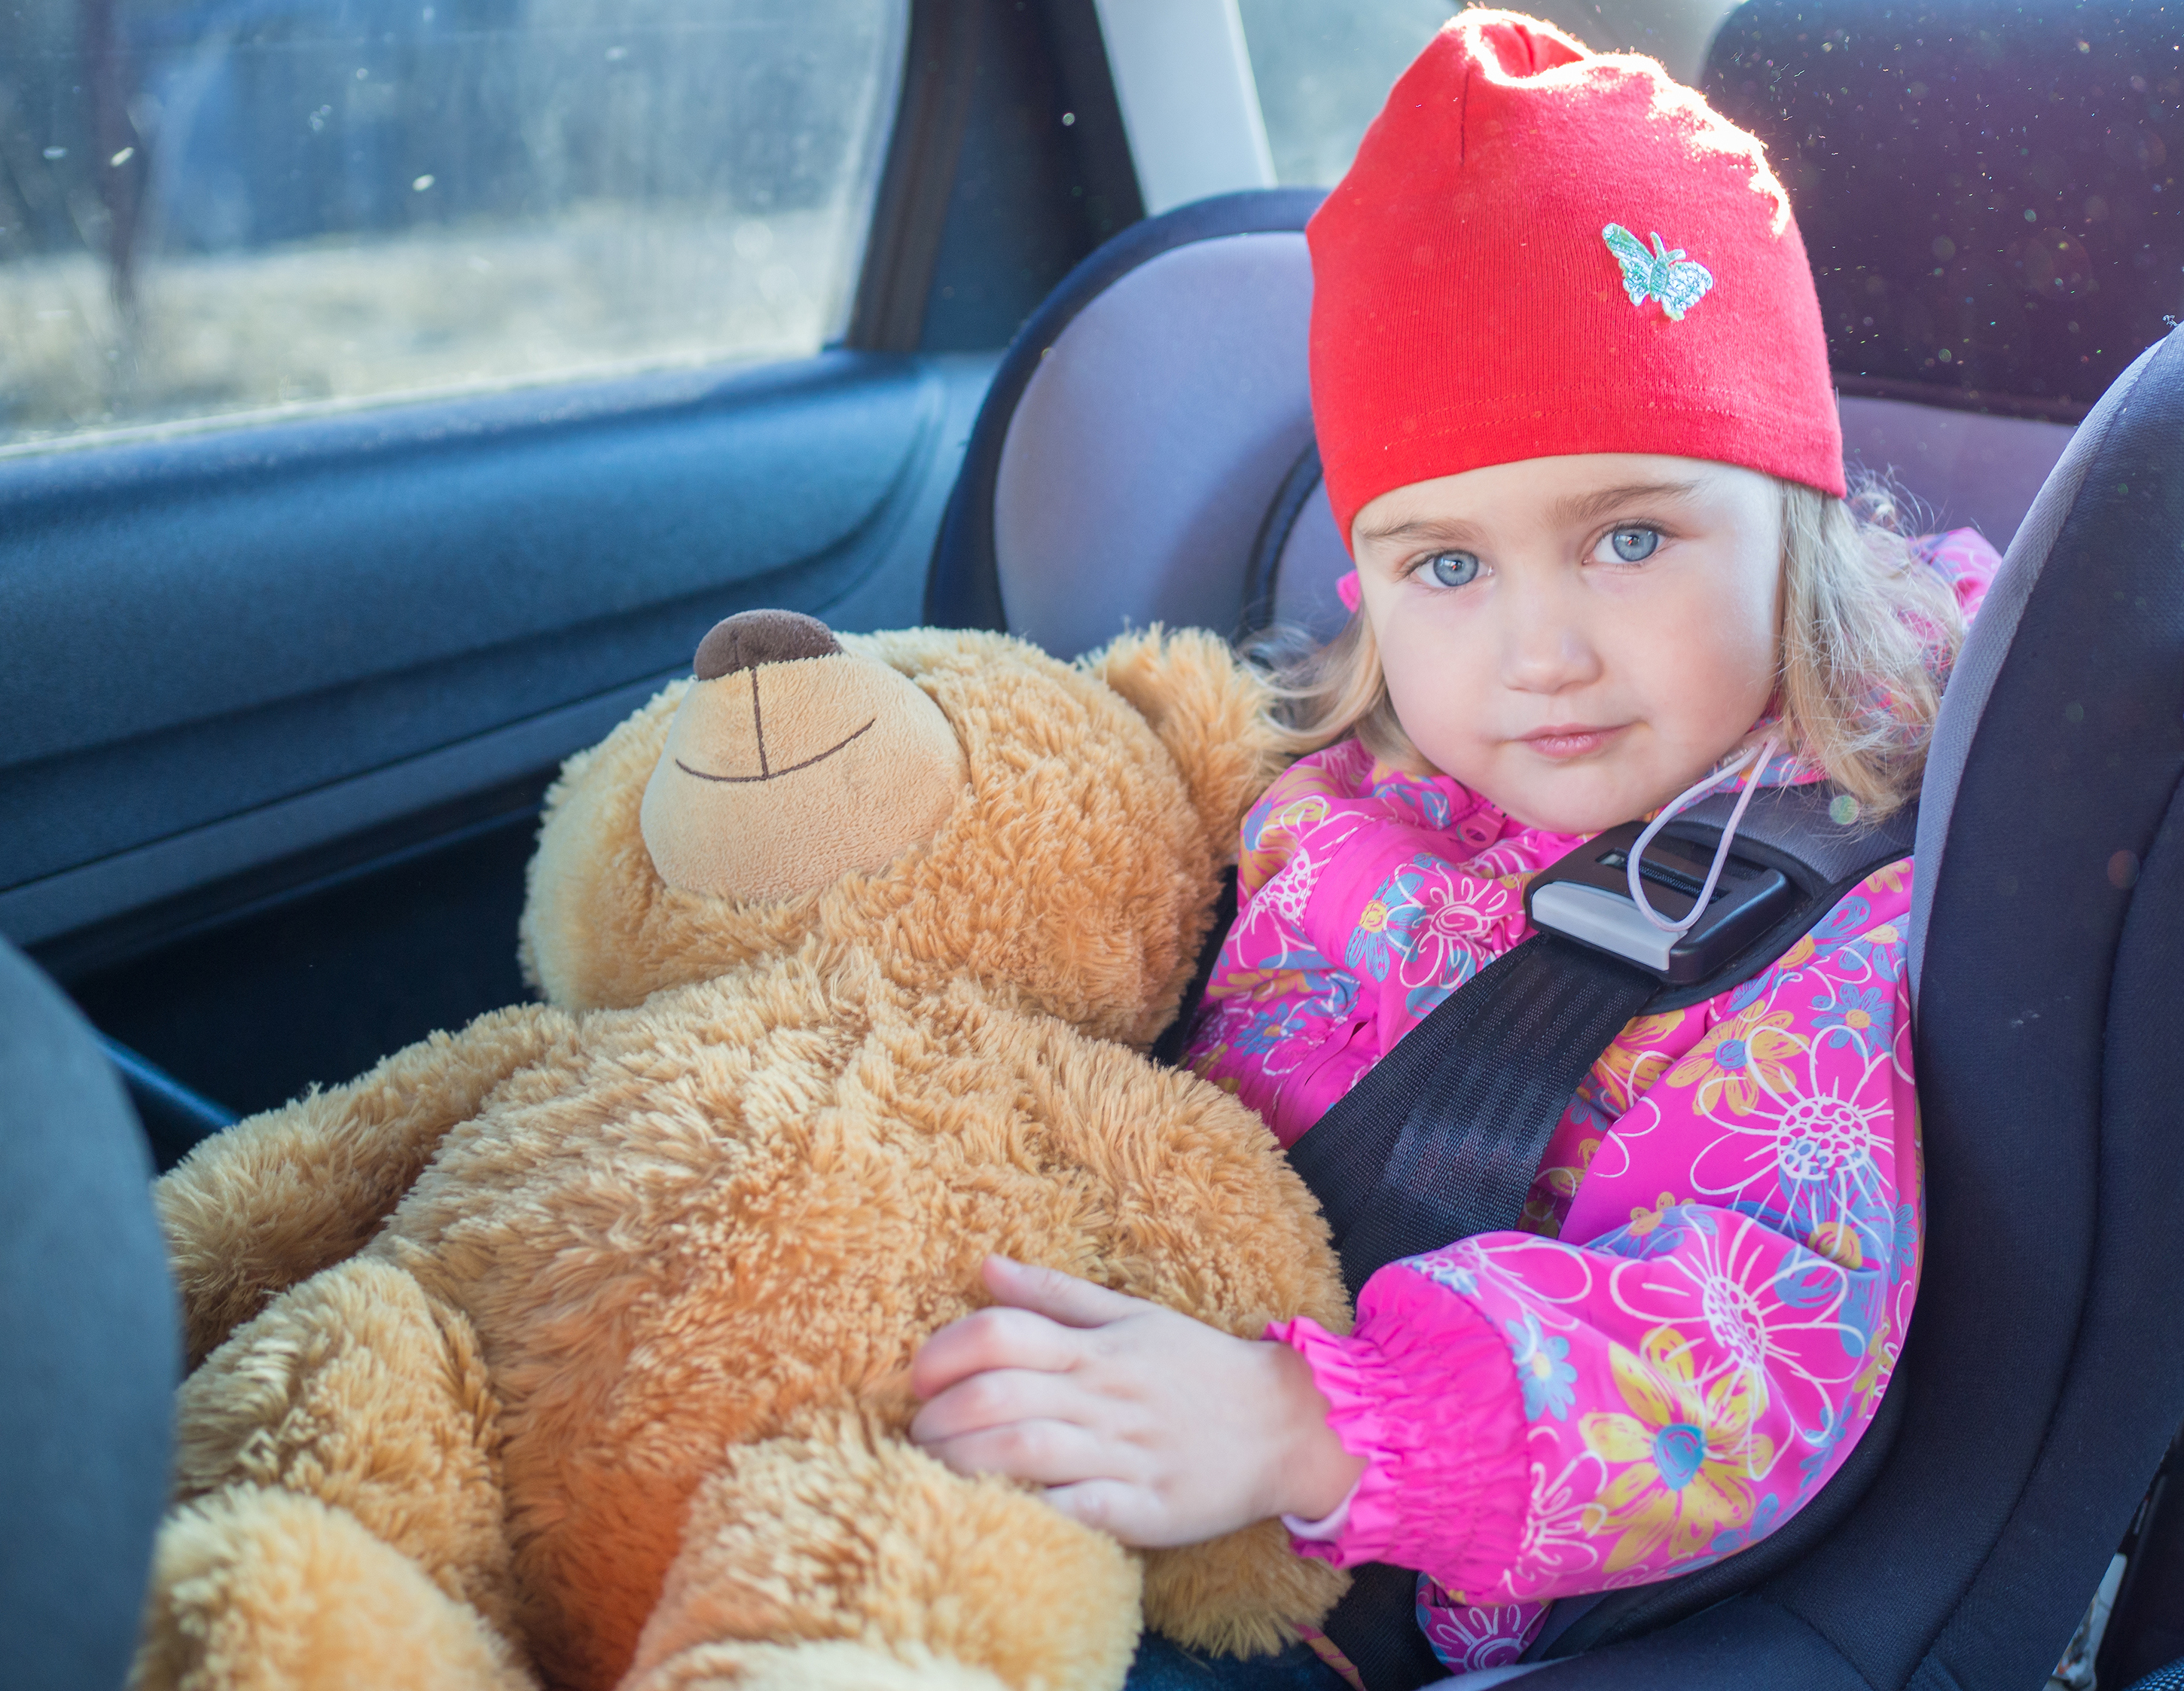 Dieťa v autosedačke, sedí, pozerá sa, spokojný pohľad, drží si plyšového macka